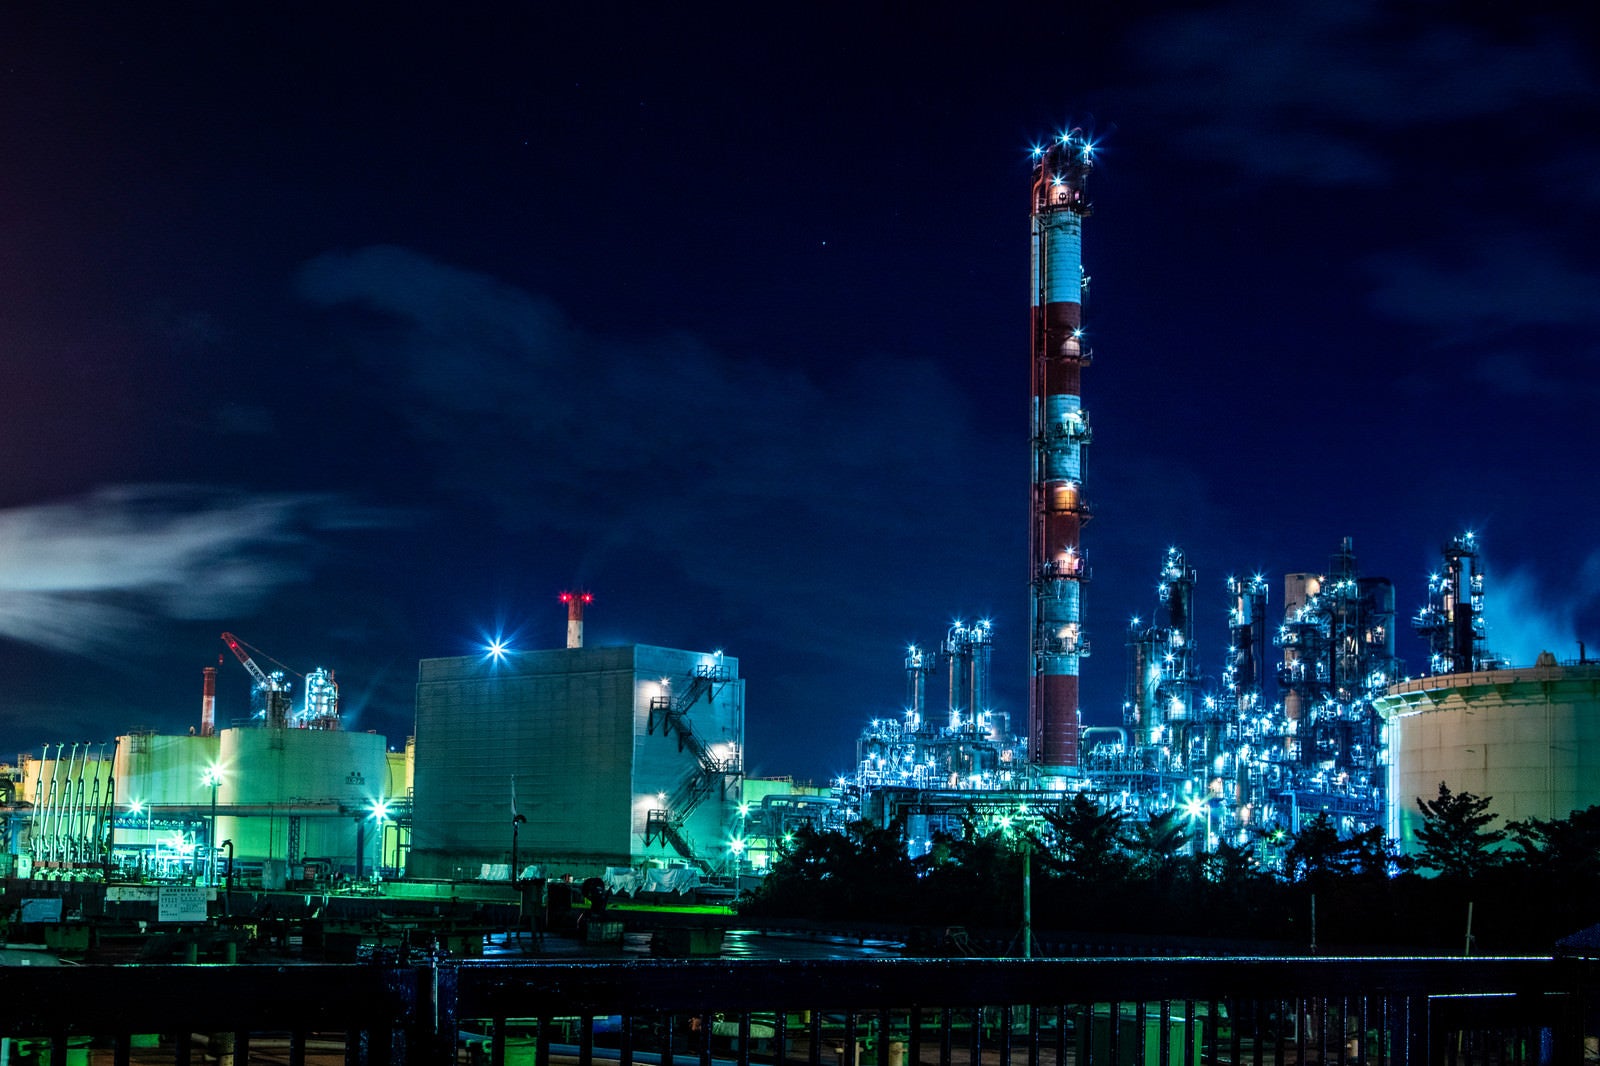 「川崎の工場夜景」の写真